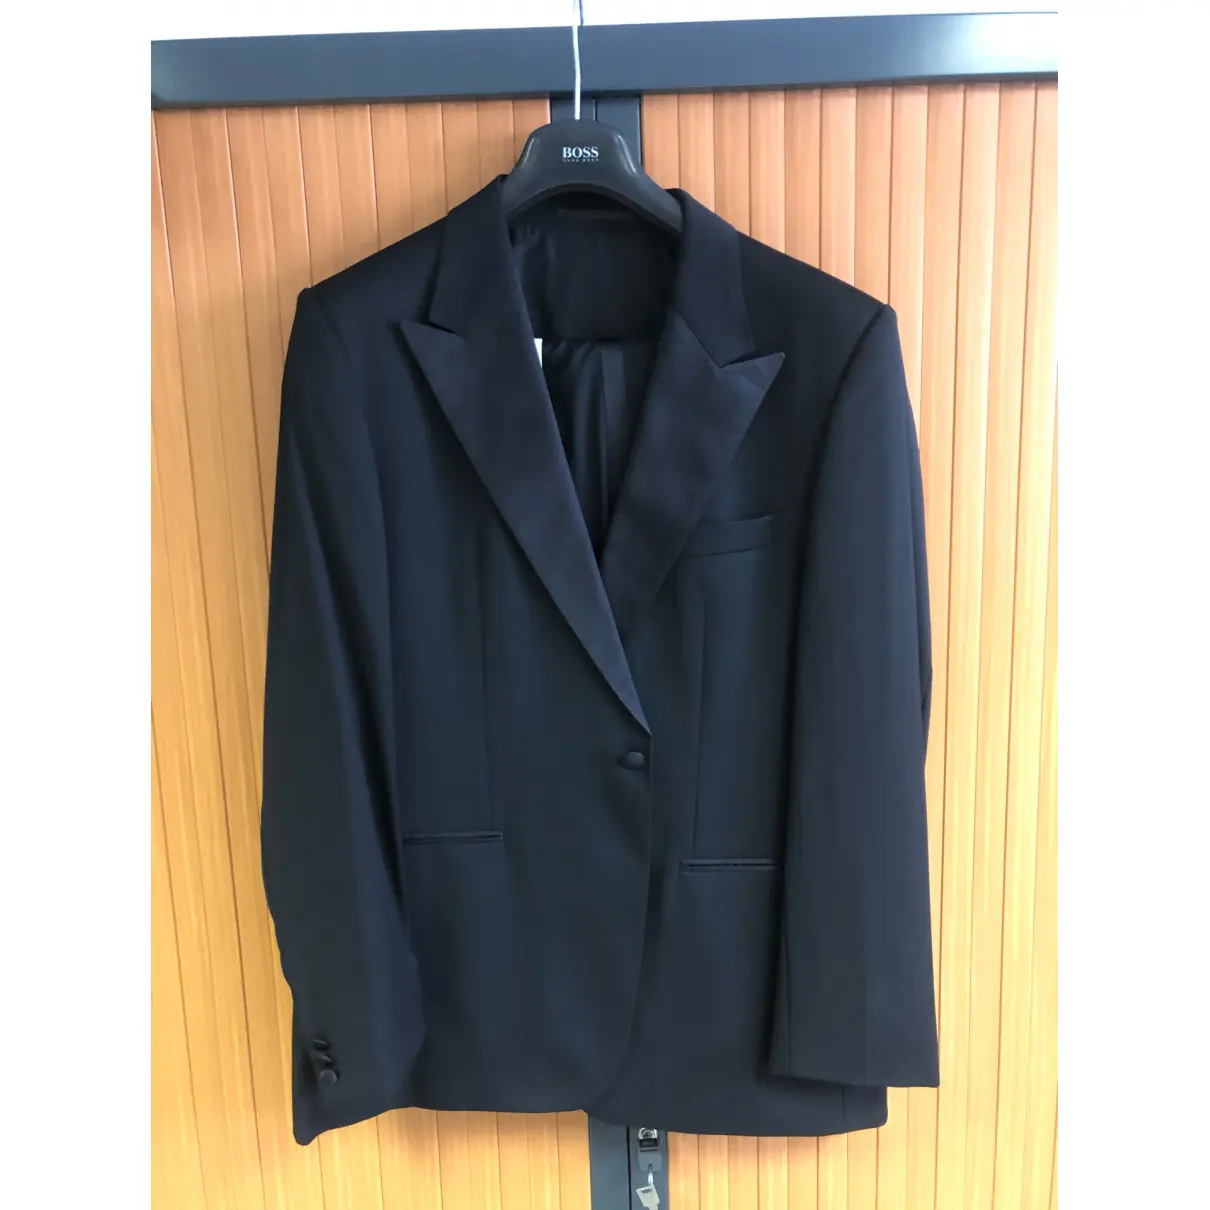 Buy Hugo Boss Silk suit online